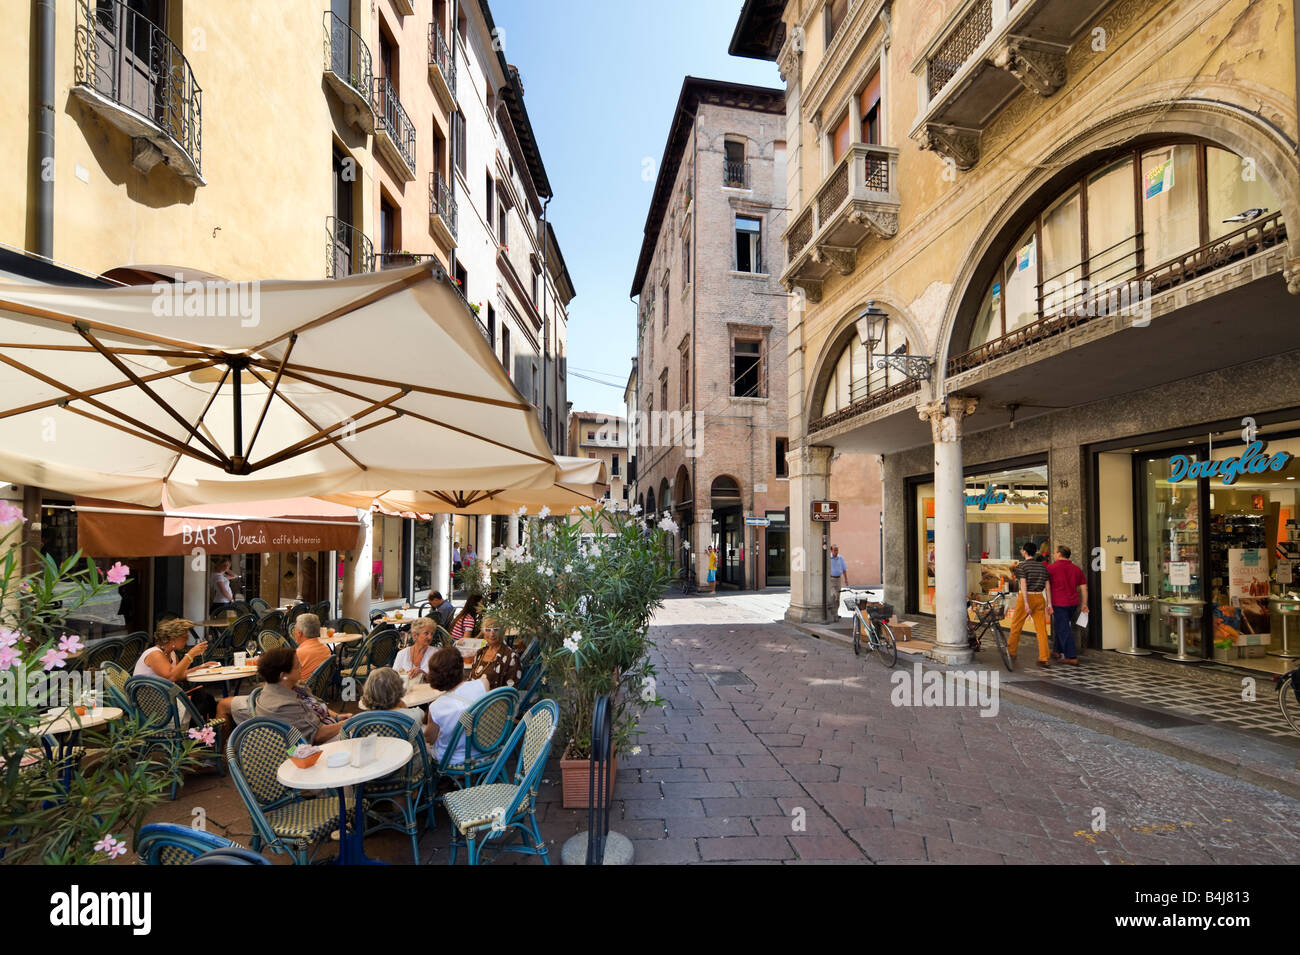 Street cafe nella città vecchia, Mantova, Lombardia, Italia Foto Stock